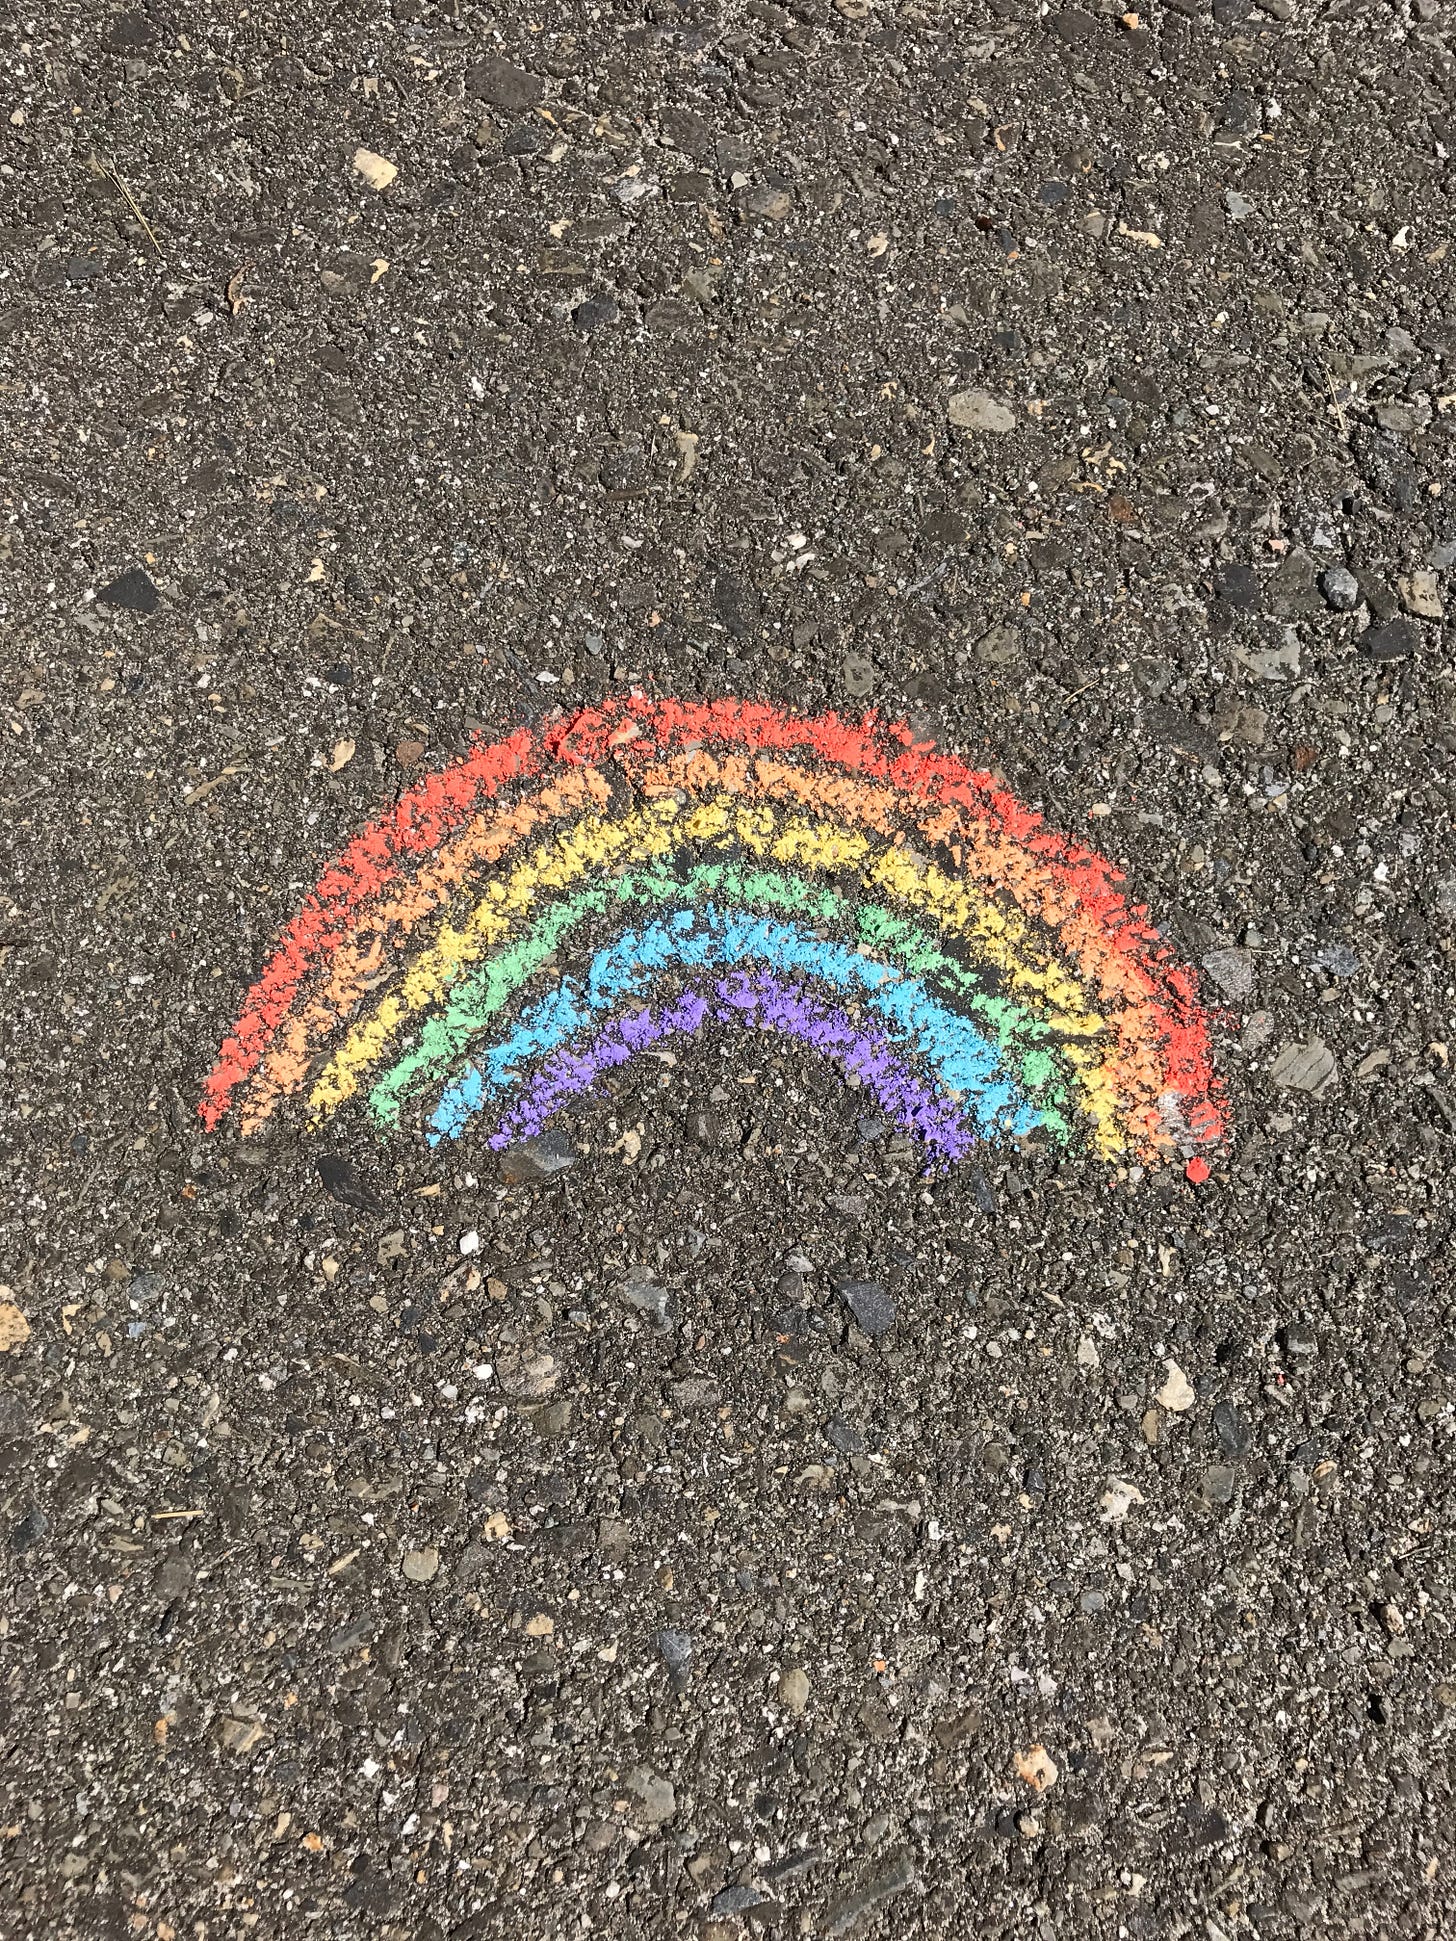 Handchalked rainbow on gravel.